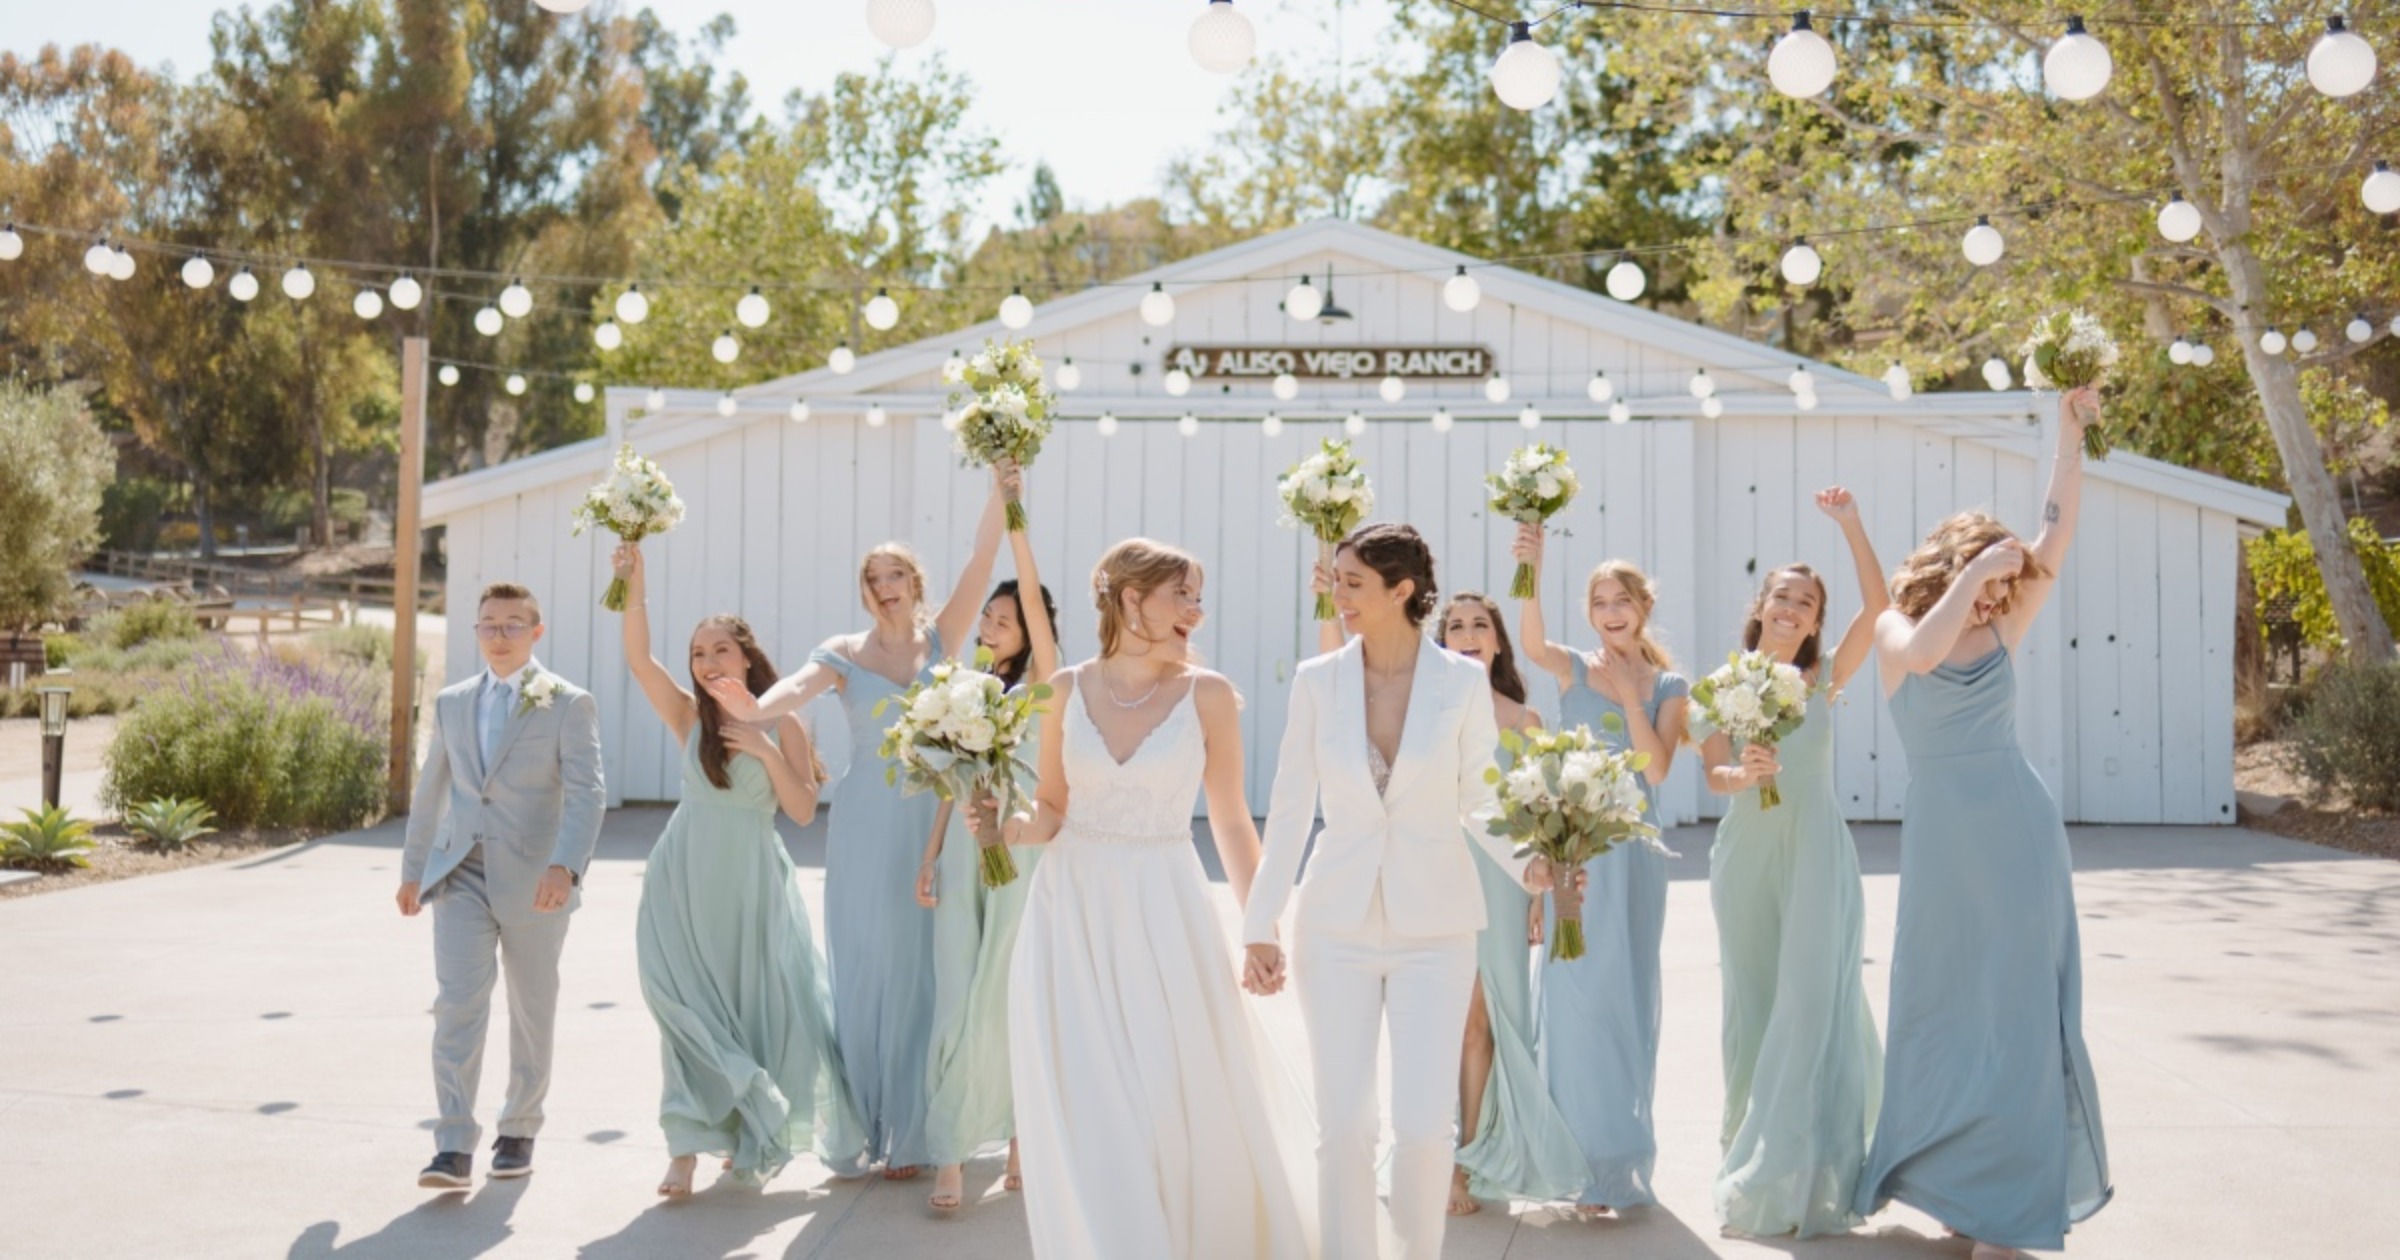 A DIY Outdoor Wedding For $20K At Aliso Viejo Ranch